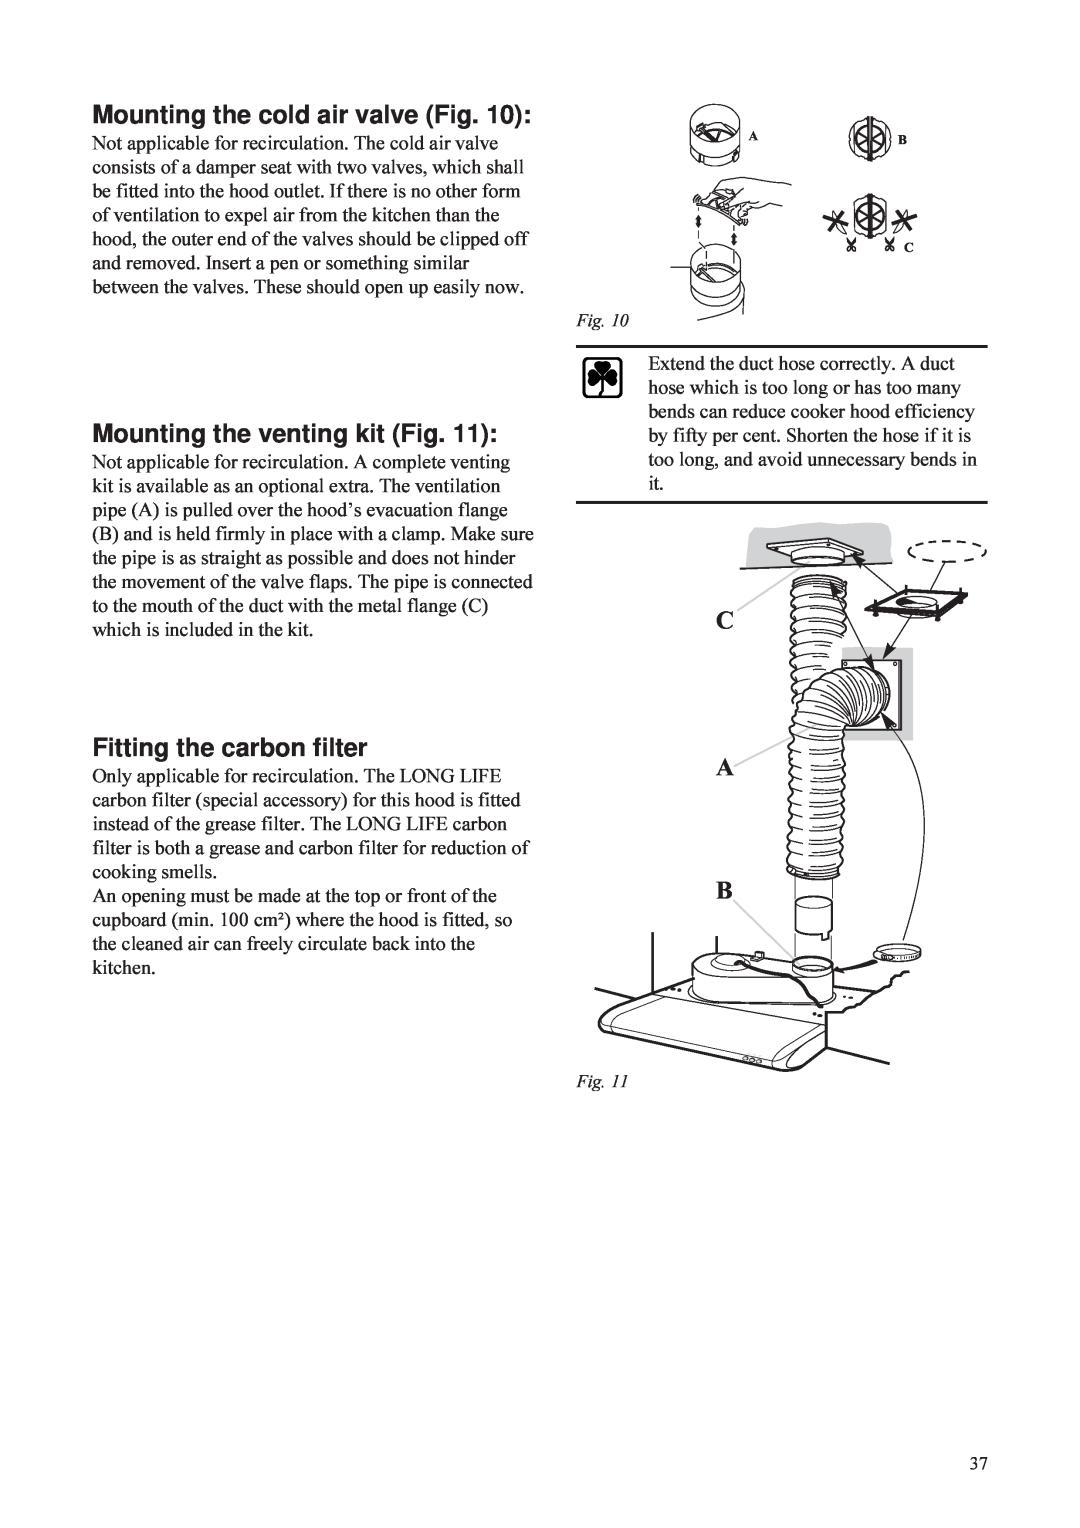 Husqvarna QC 720, QC 620 Mounting the cold air valve Fig, Mounting the venting kit Fig, Fitting the carbon filter, C A B 